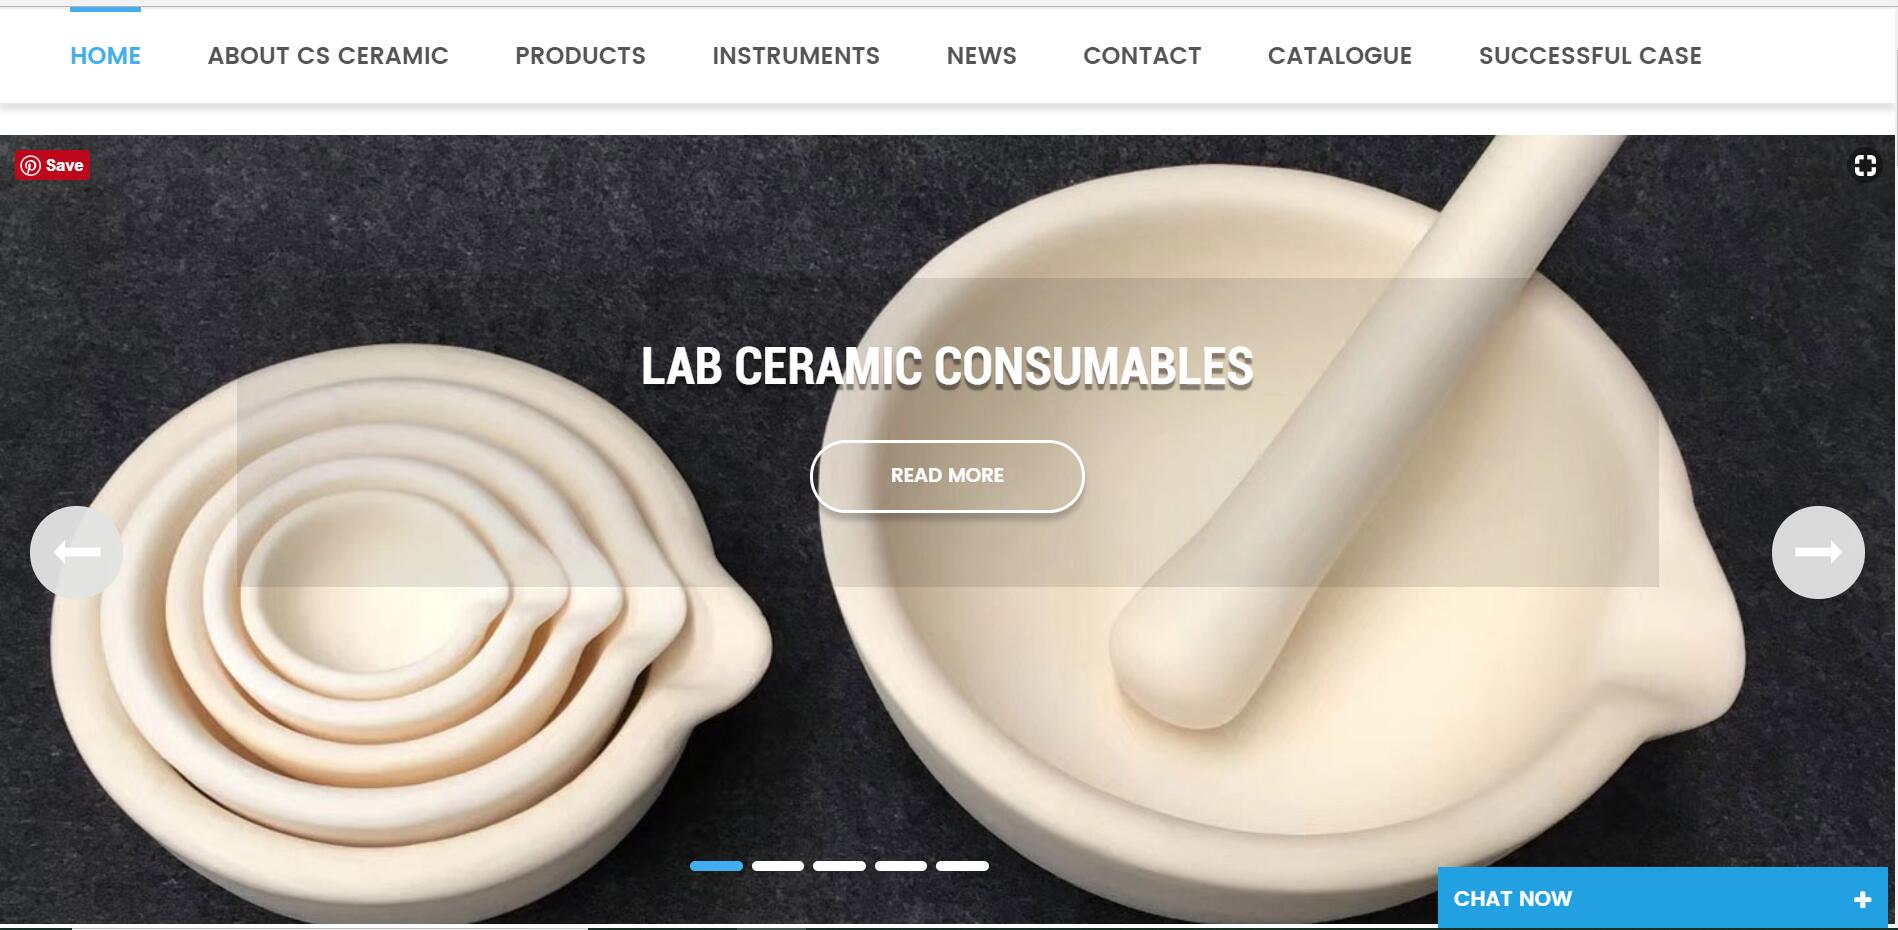 Официальный сайт CS Ceramic теперь имеет десять видов языковых интерфейсов